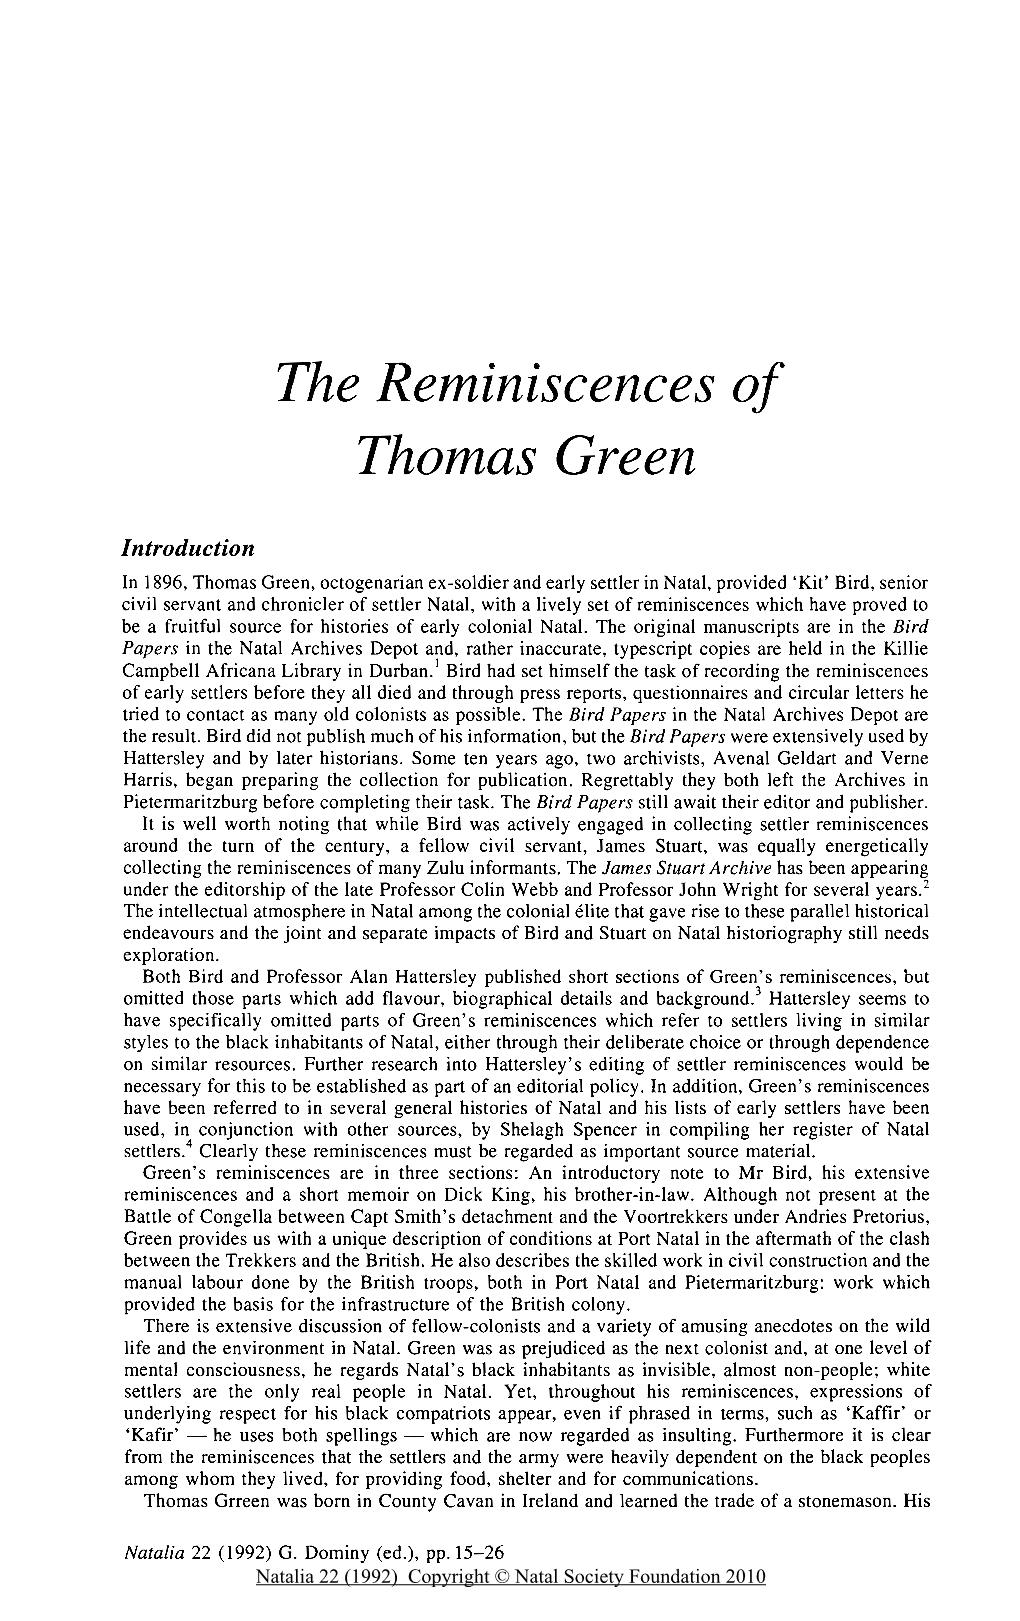 The Reminiscences of Thomas Green Graham Dominy